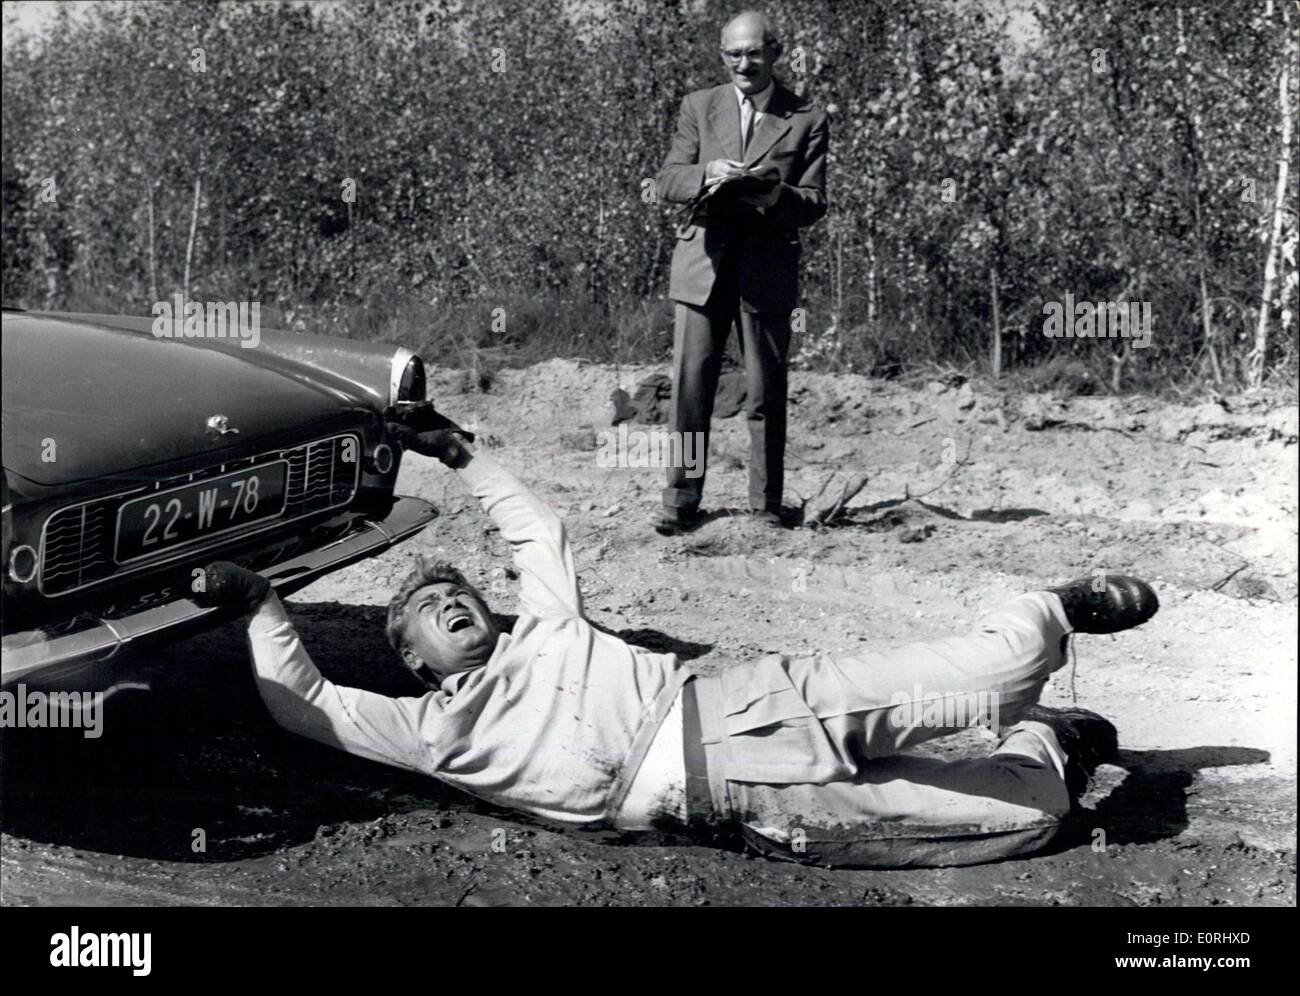 Septembre 18, 1959 - Un accident de voiture ? Non, Jean Marais démontrant le  pli de son pantalon ? Jean Marais, le célèbre acteur de l'écran français,  démontre d'une manière originale le